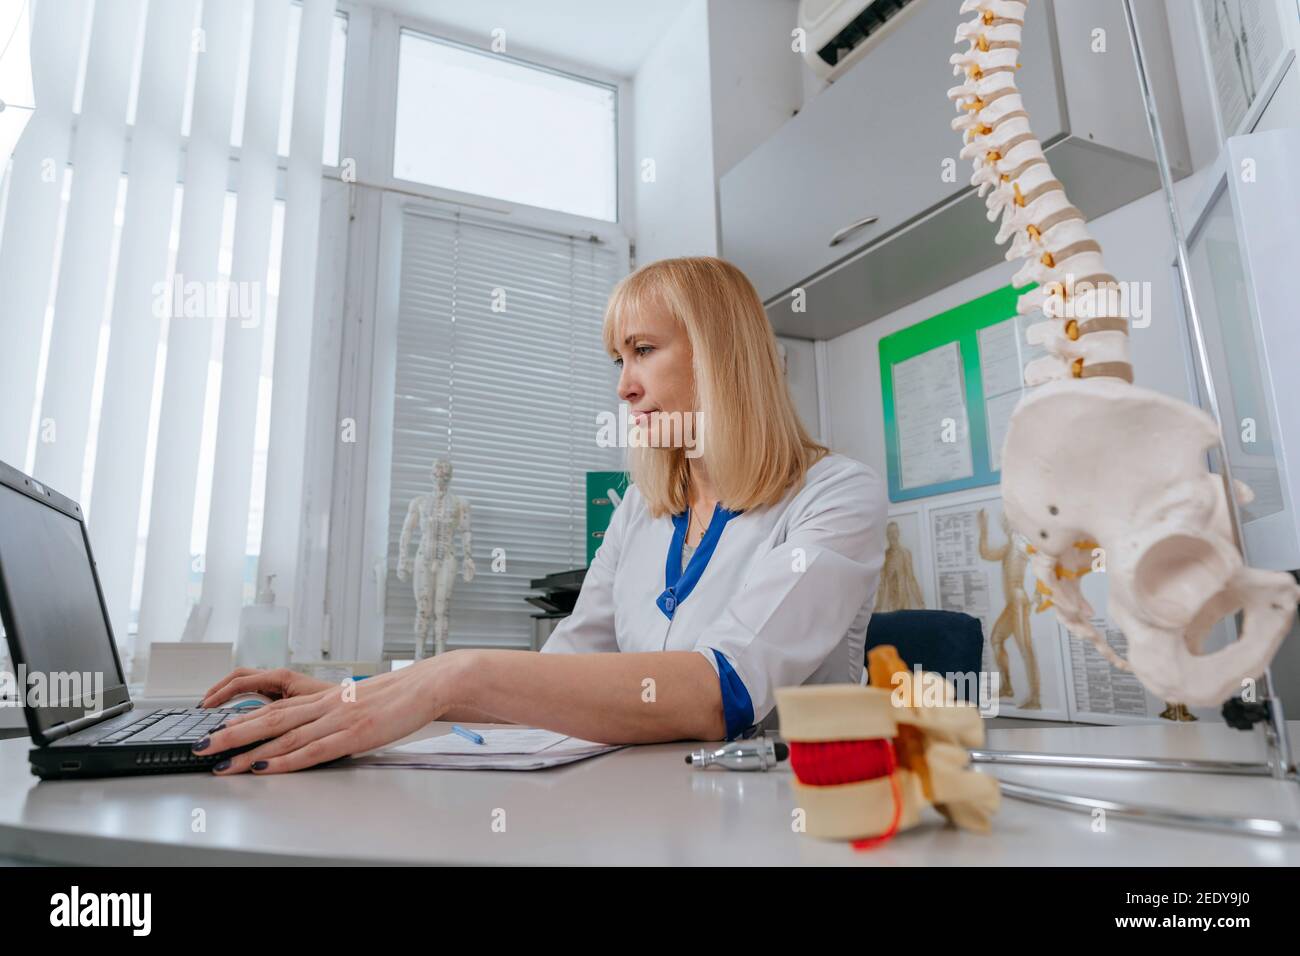 Femme médecin physiothérapeute utilisant un ordinateur portable dans son lieu de travail à l'hôpital Banque D'Images